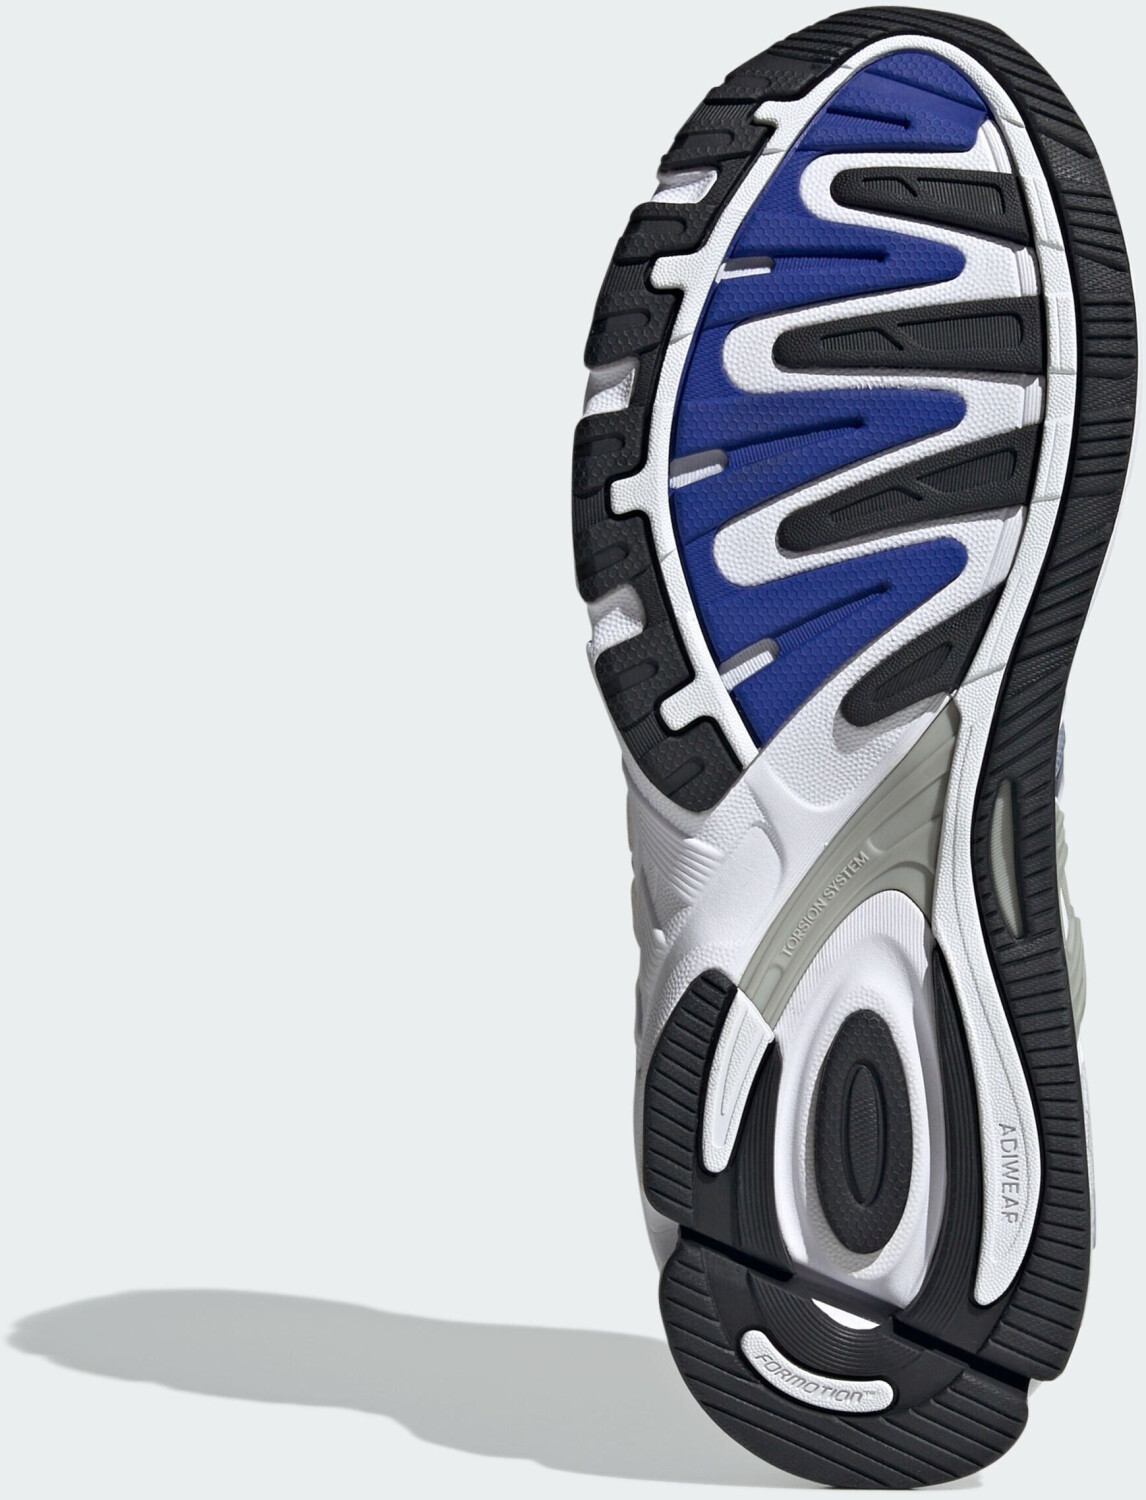 Adidas Response CL cloud white/core black/lucid blue (ID4596) ab 84,90 € |  Preisvergleich bei